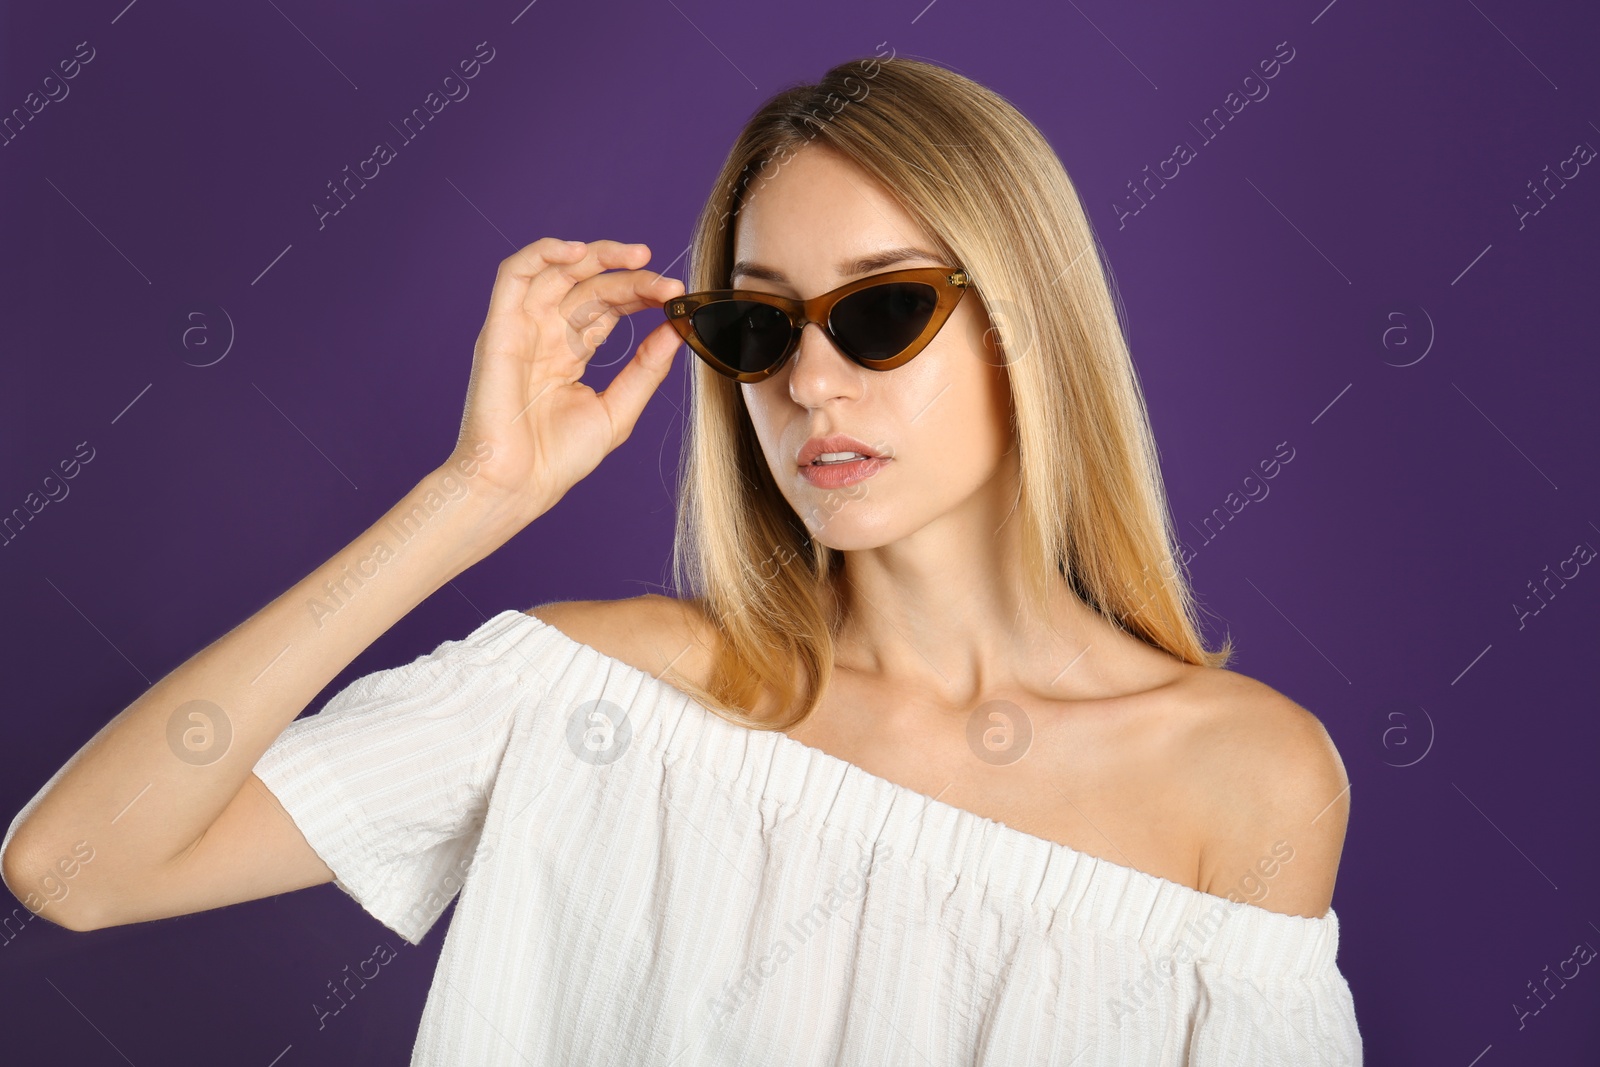 Photo of Beautiful woman in stylish sunglasses on purple background